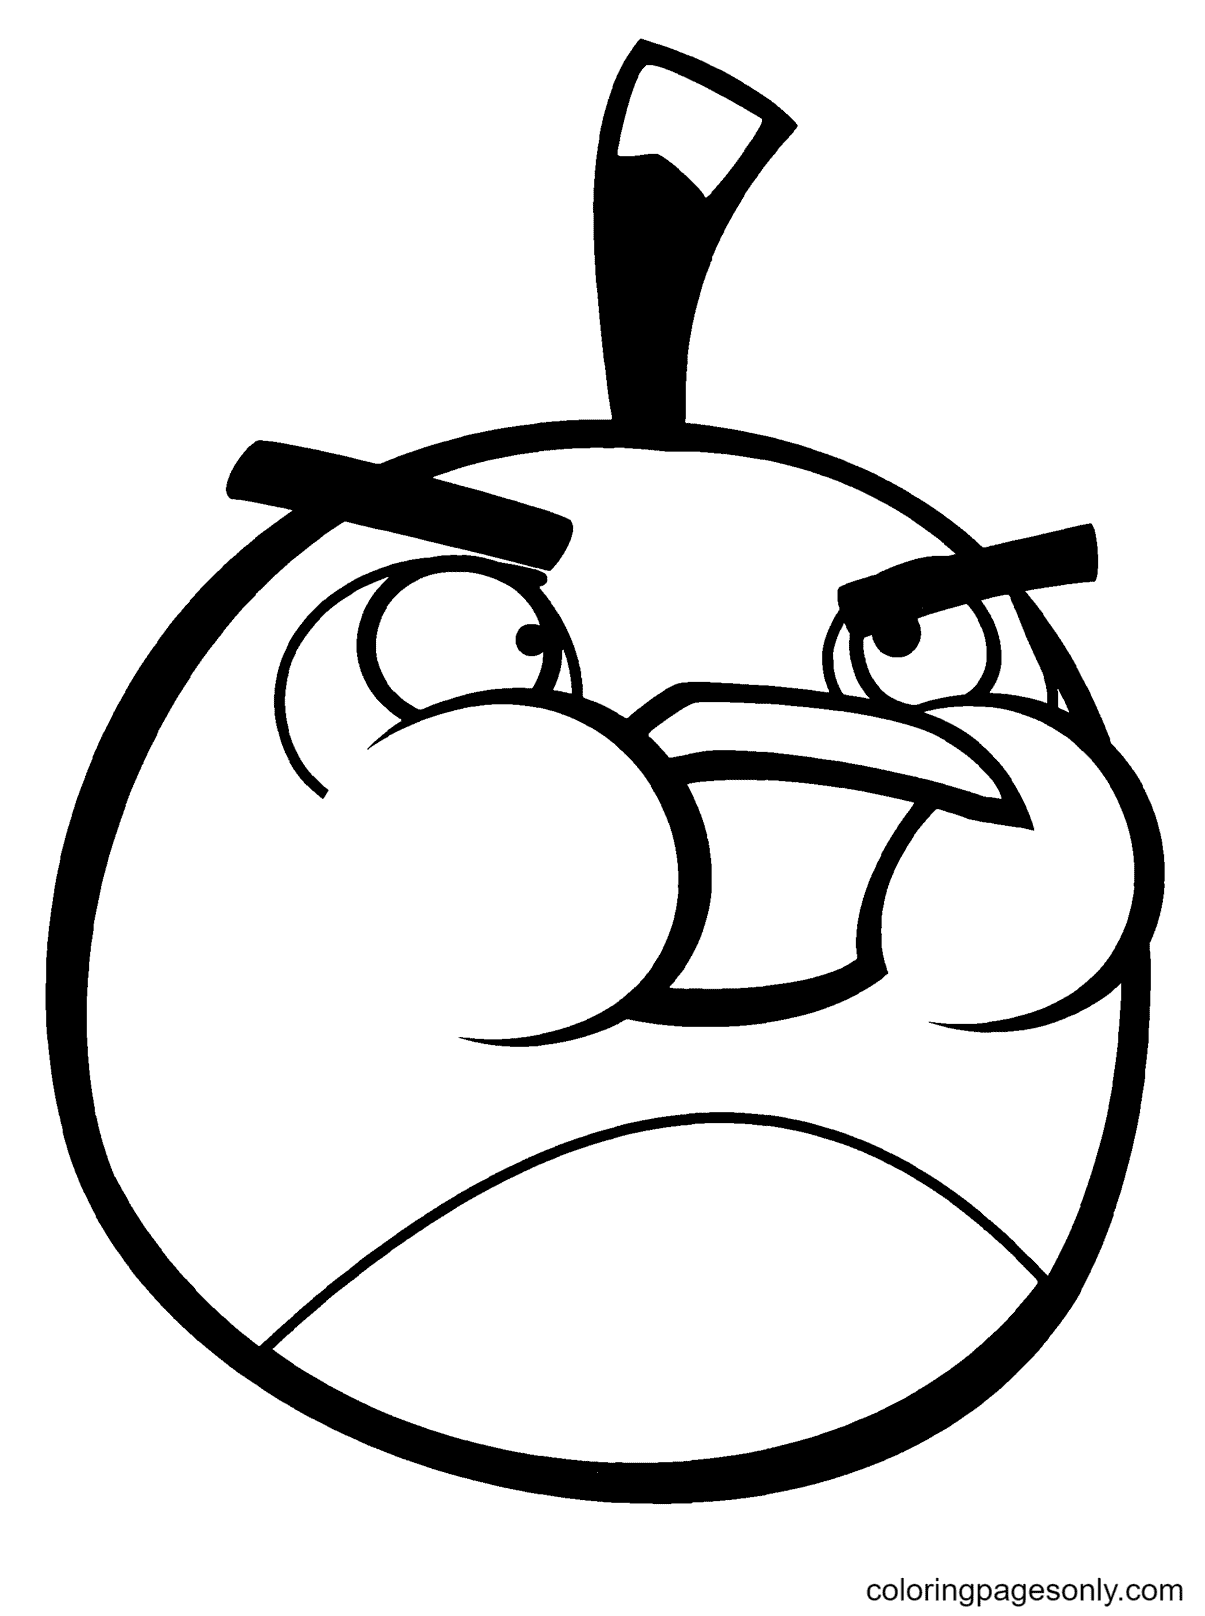 Bomba, o pássaro preto de Angry Birds